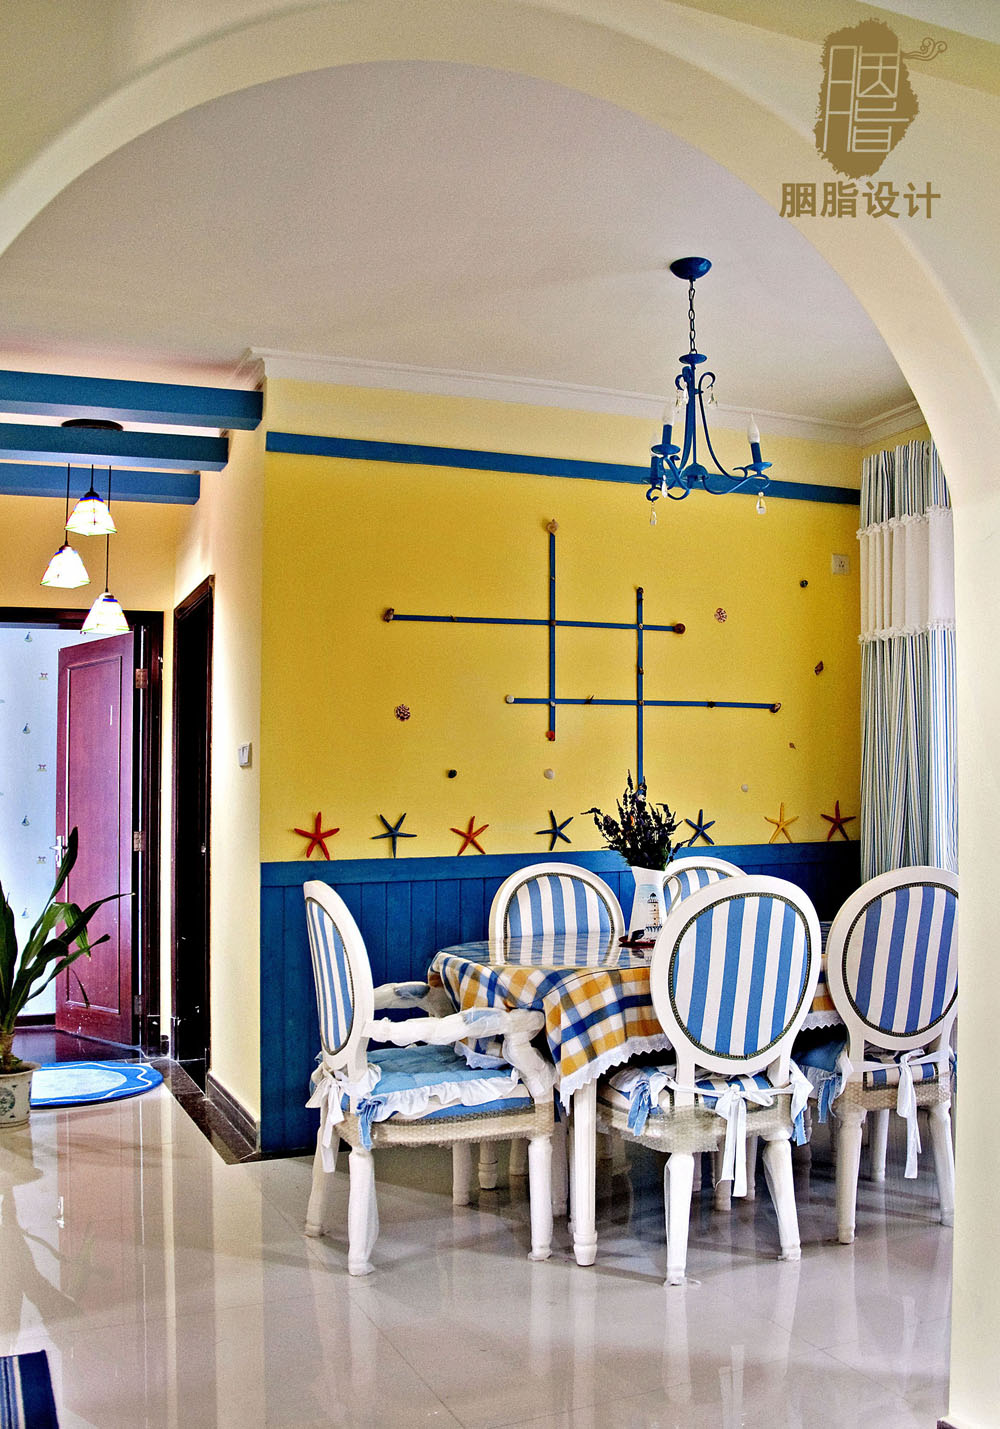 胭脂设计 地中海风格 旧房改造 三居 蓝白黄搭配 广州案例 胭脂赖 餐厅图片来自设计师胭脂在蓝黄白编织浪漫地中海的分享